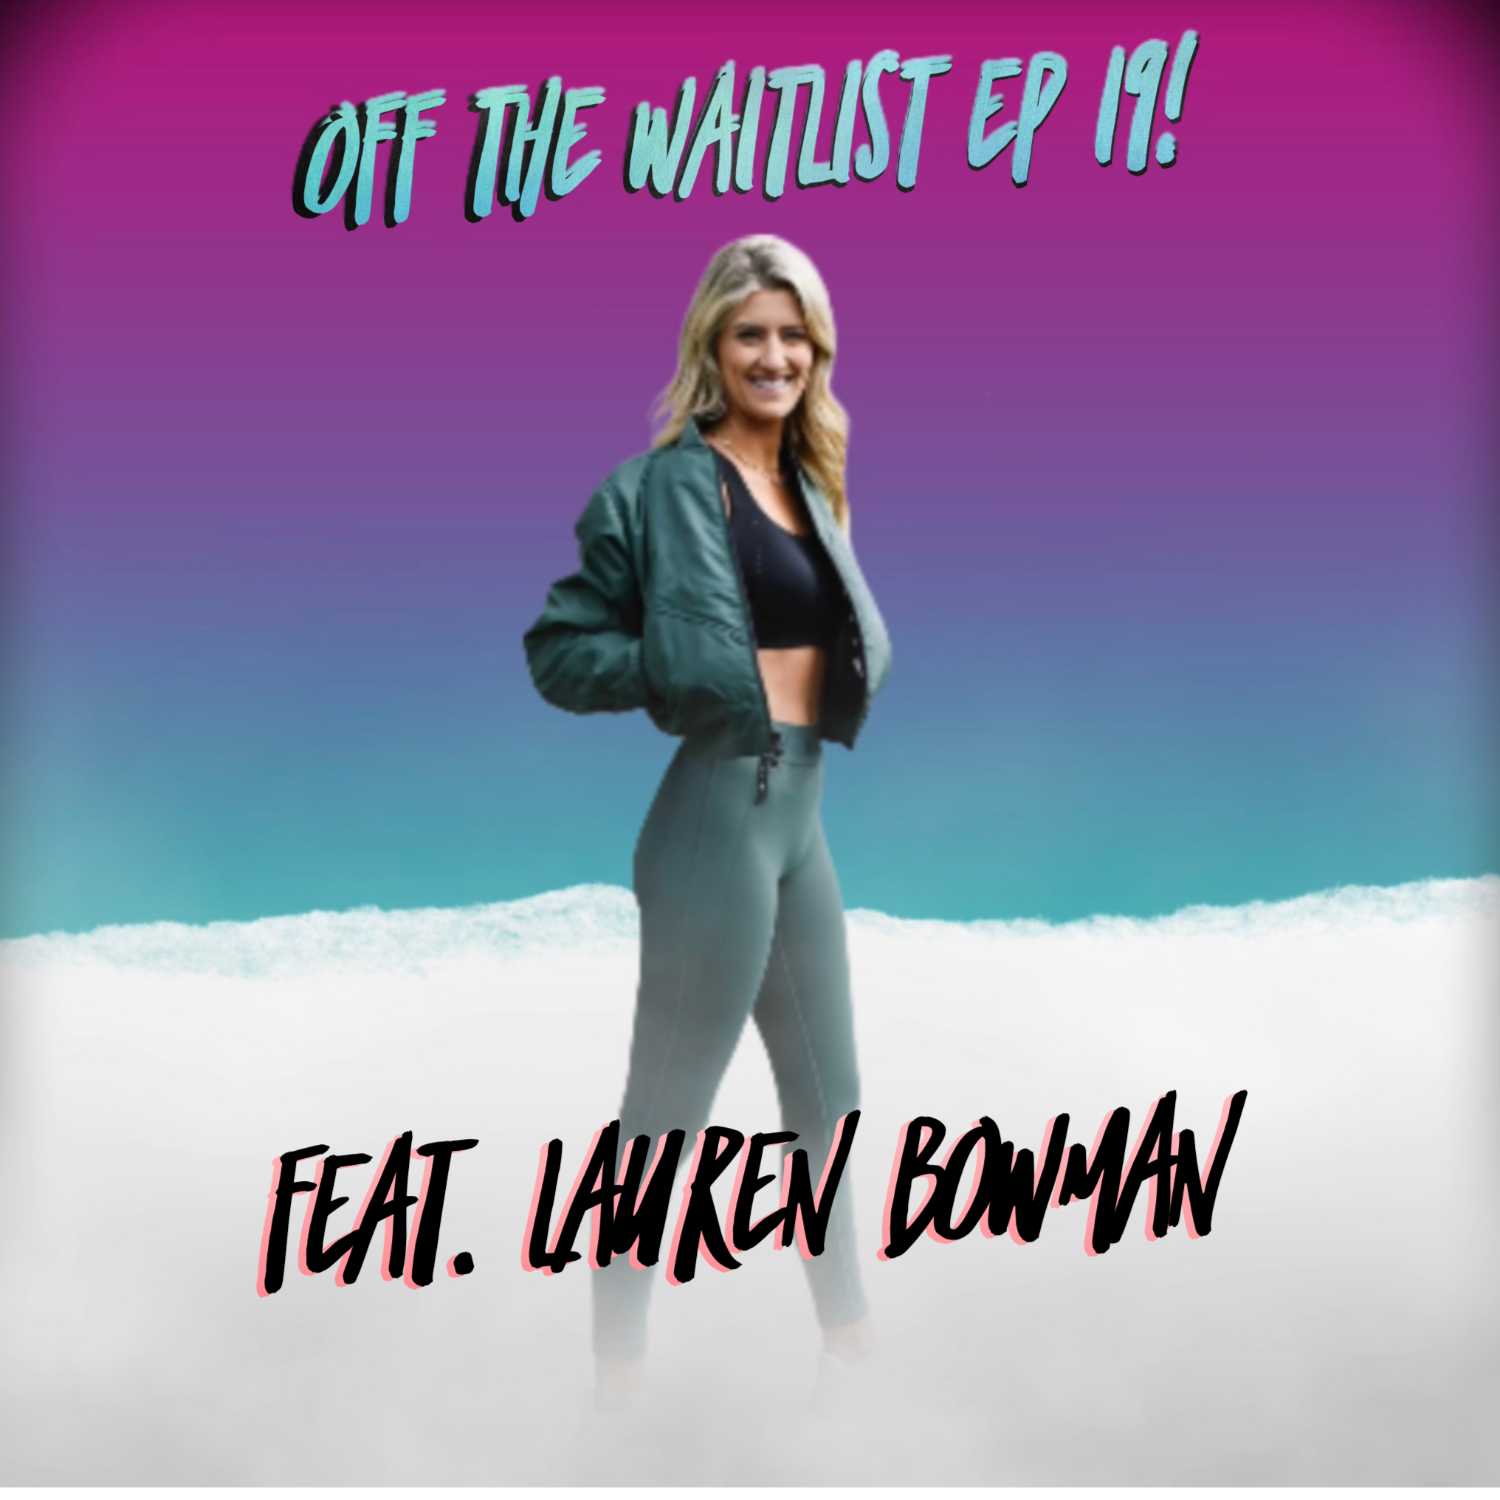 OTW Episode 19 feat Lauren Bowman!